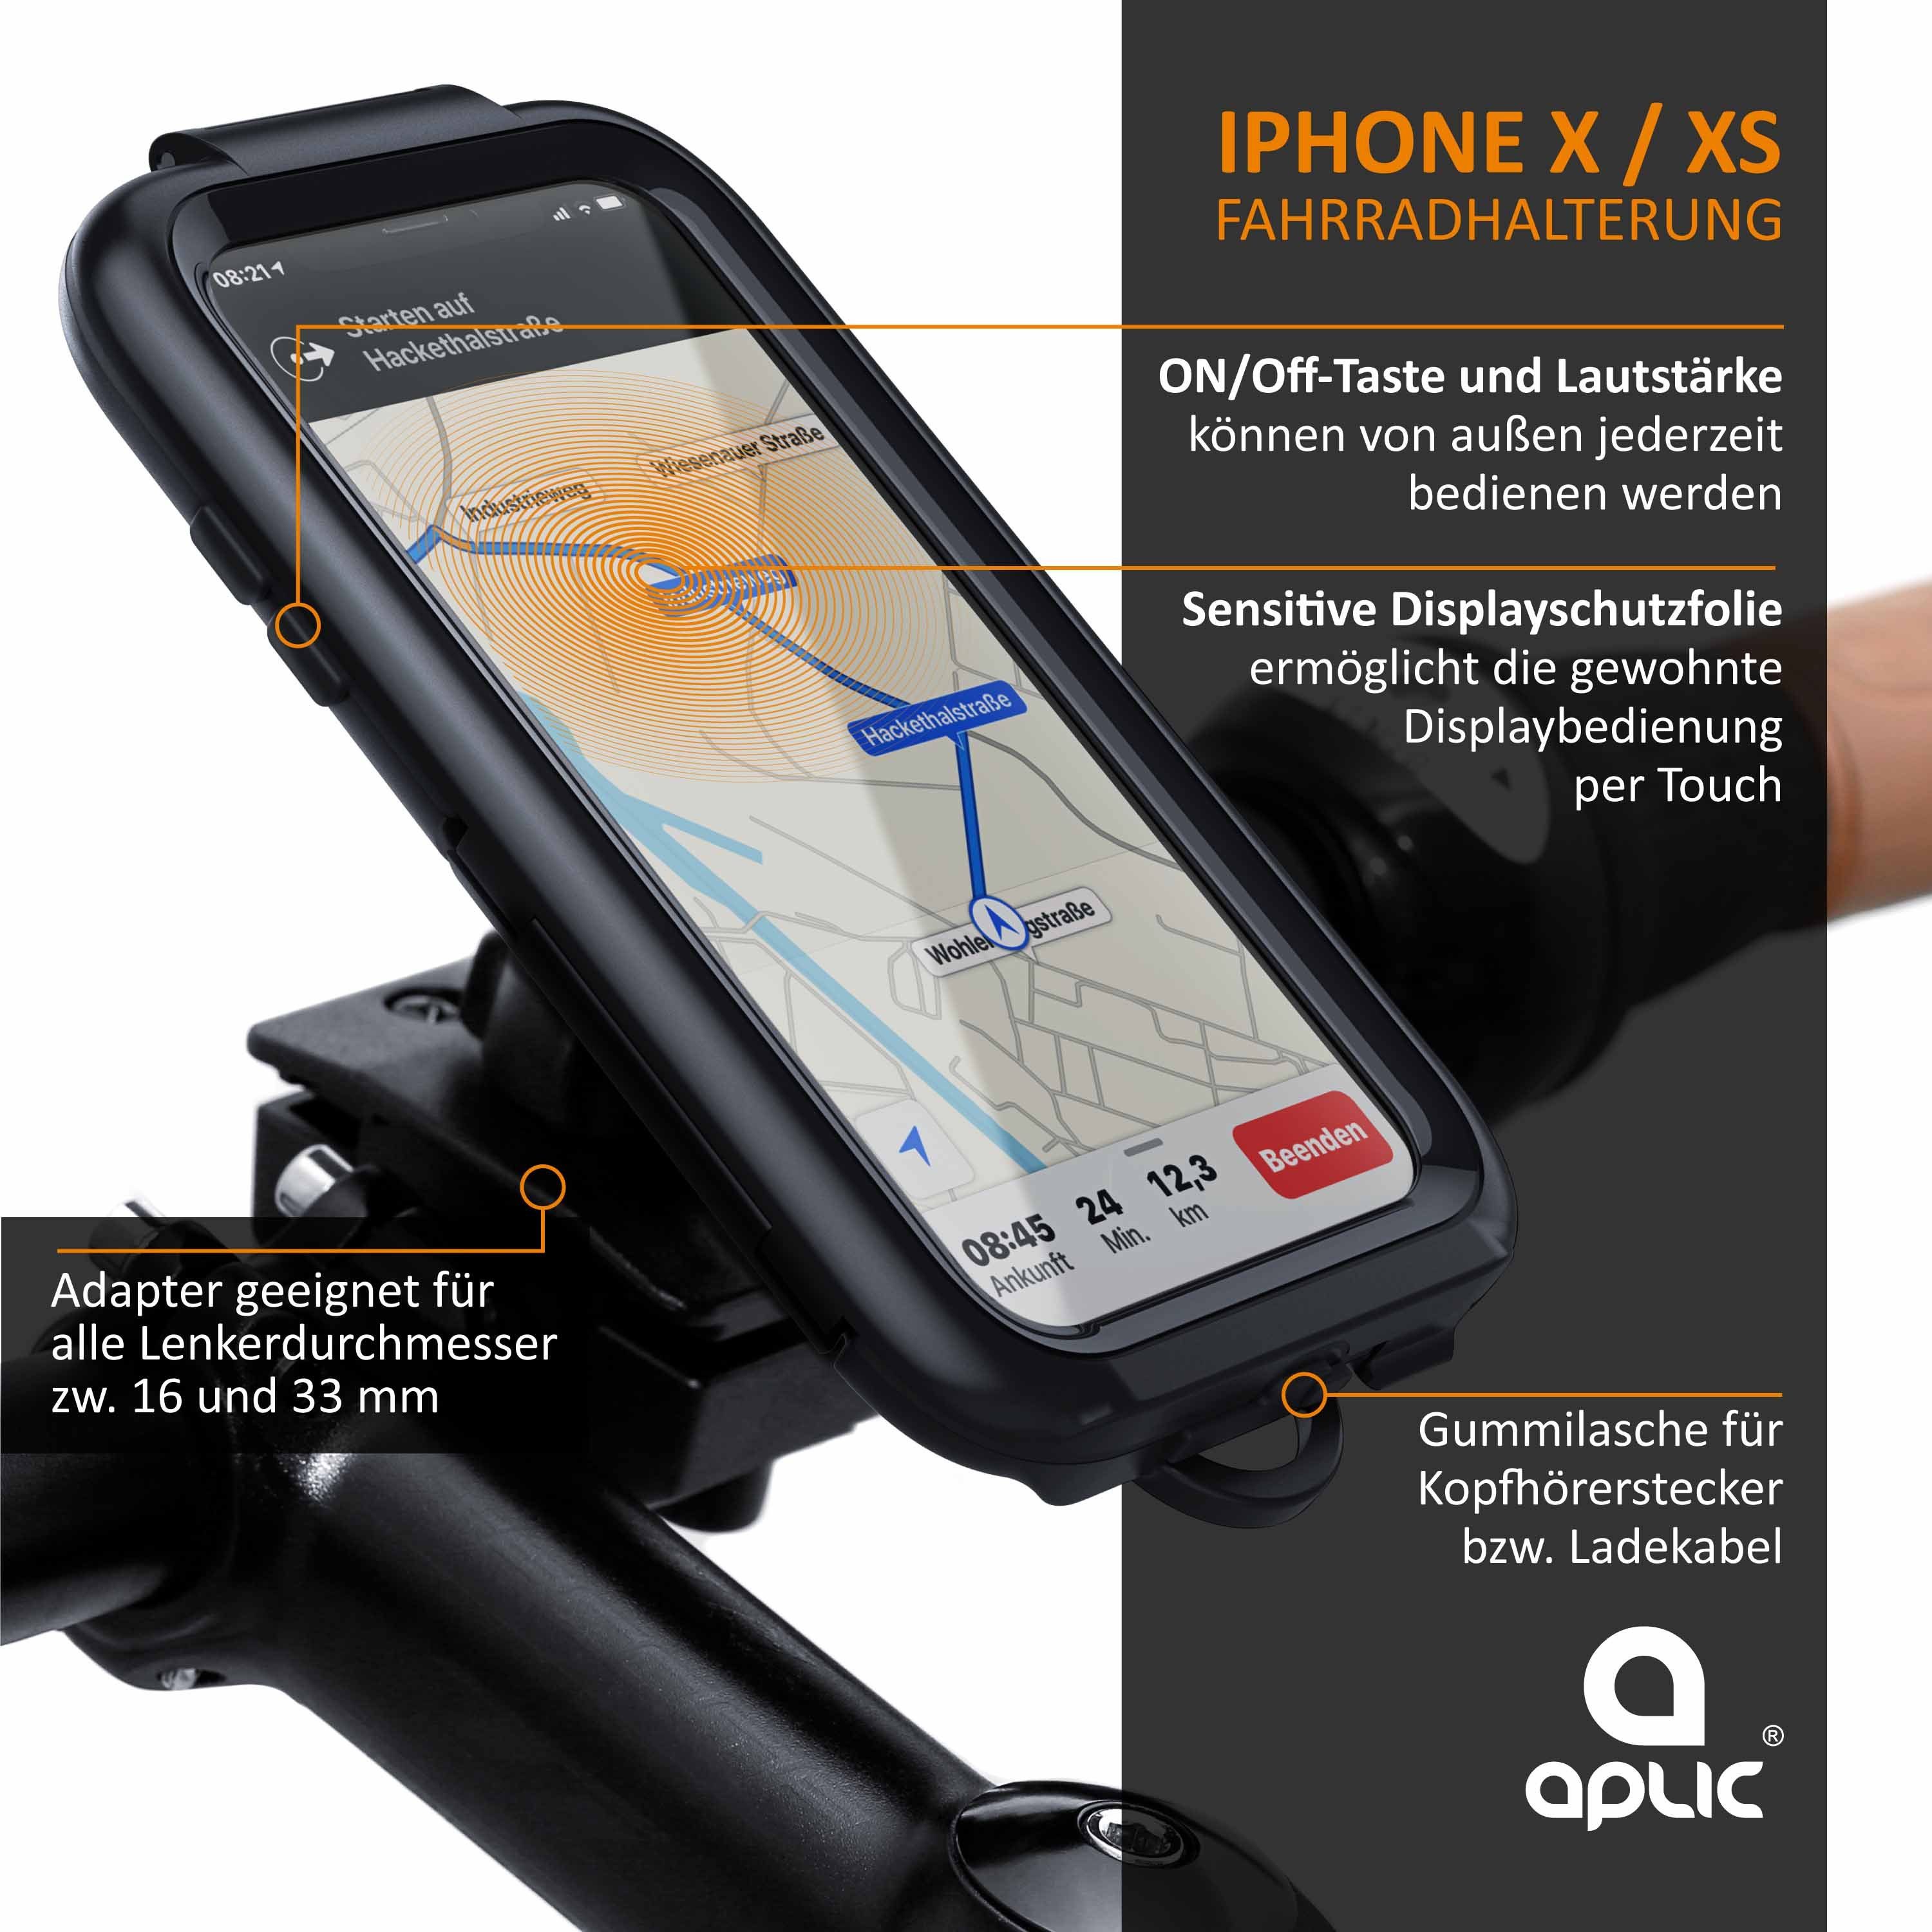 WICKED CHILI Tour Case wasserdichte Fahrradhalterung für Apple iPhone 8  Plus / 7 Plus / 6 Plus / 6S Plus Fahrrad / Motorrad Handy Halterung,  schwarz